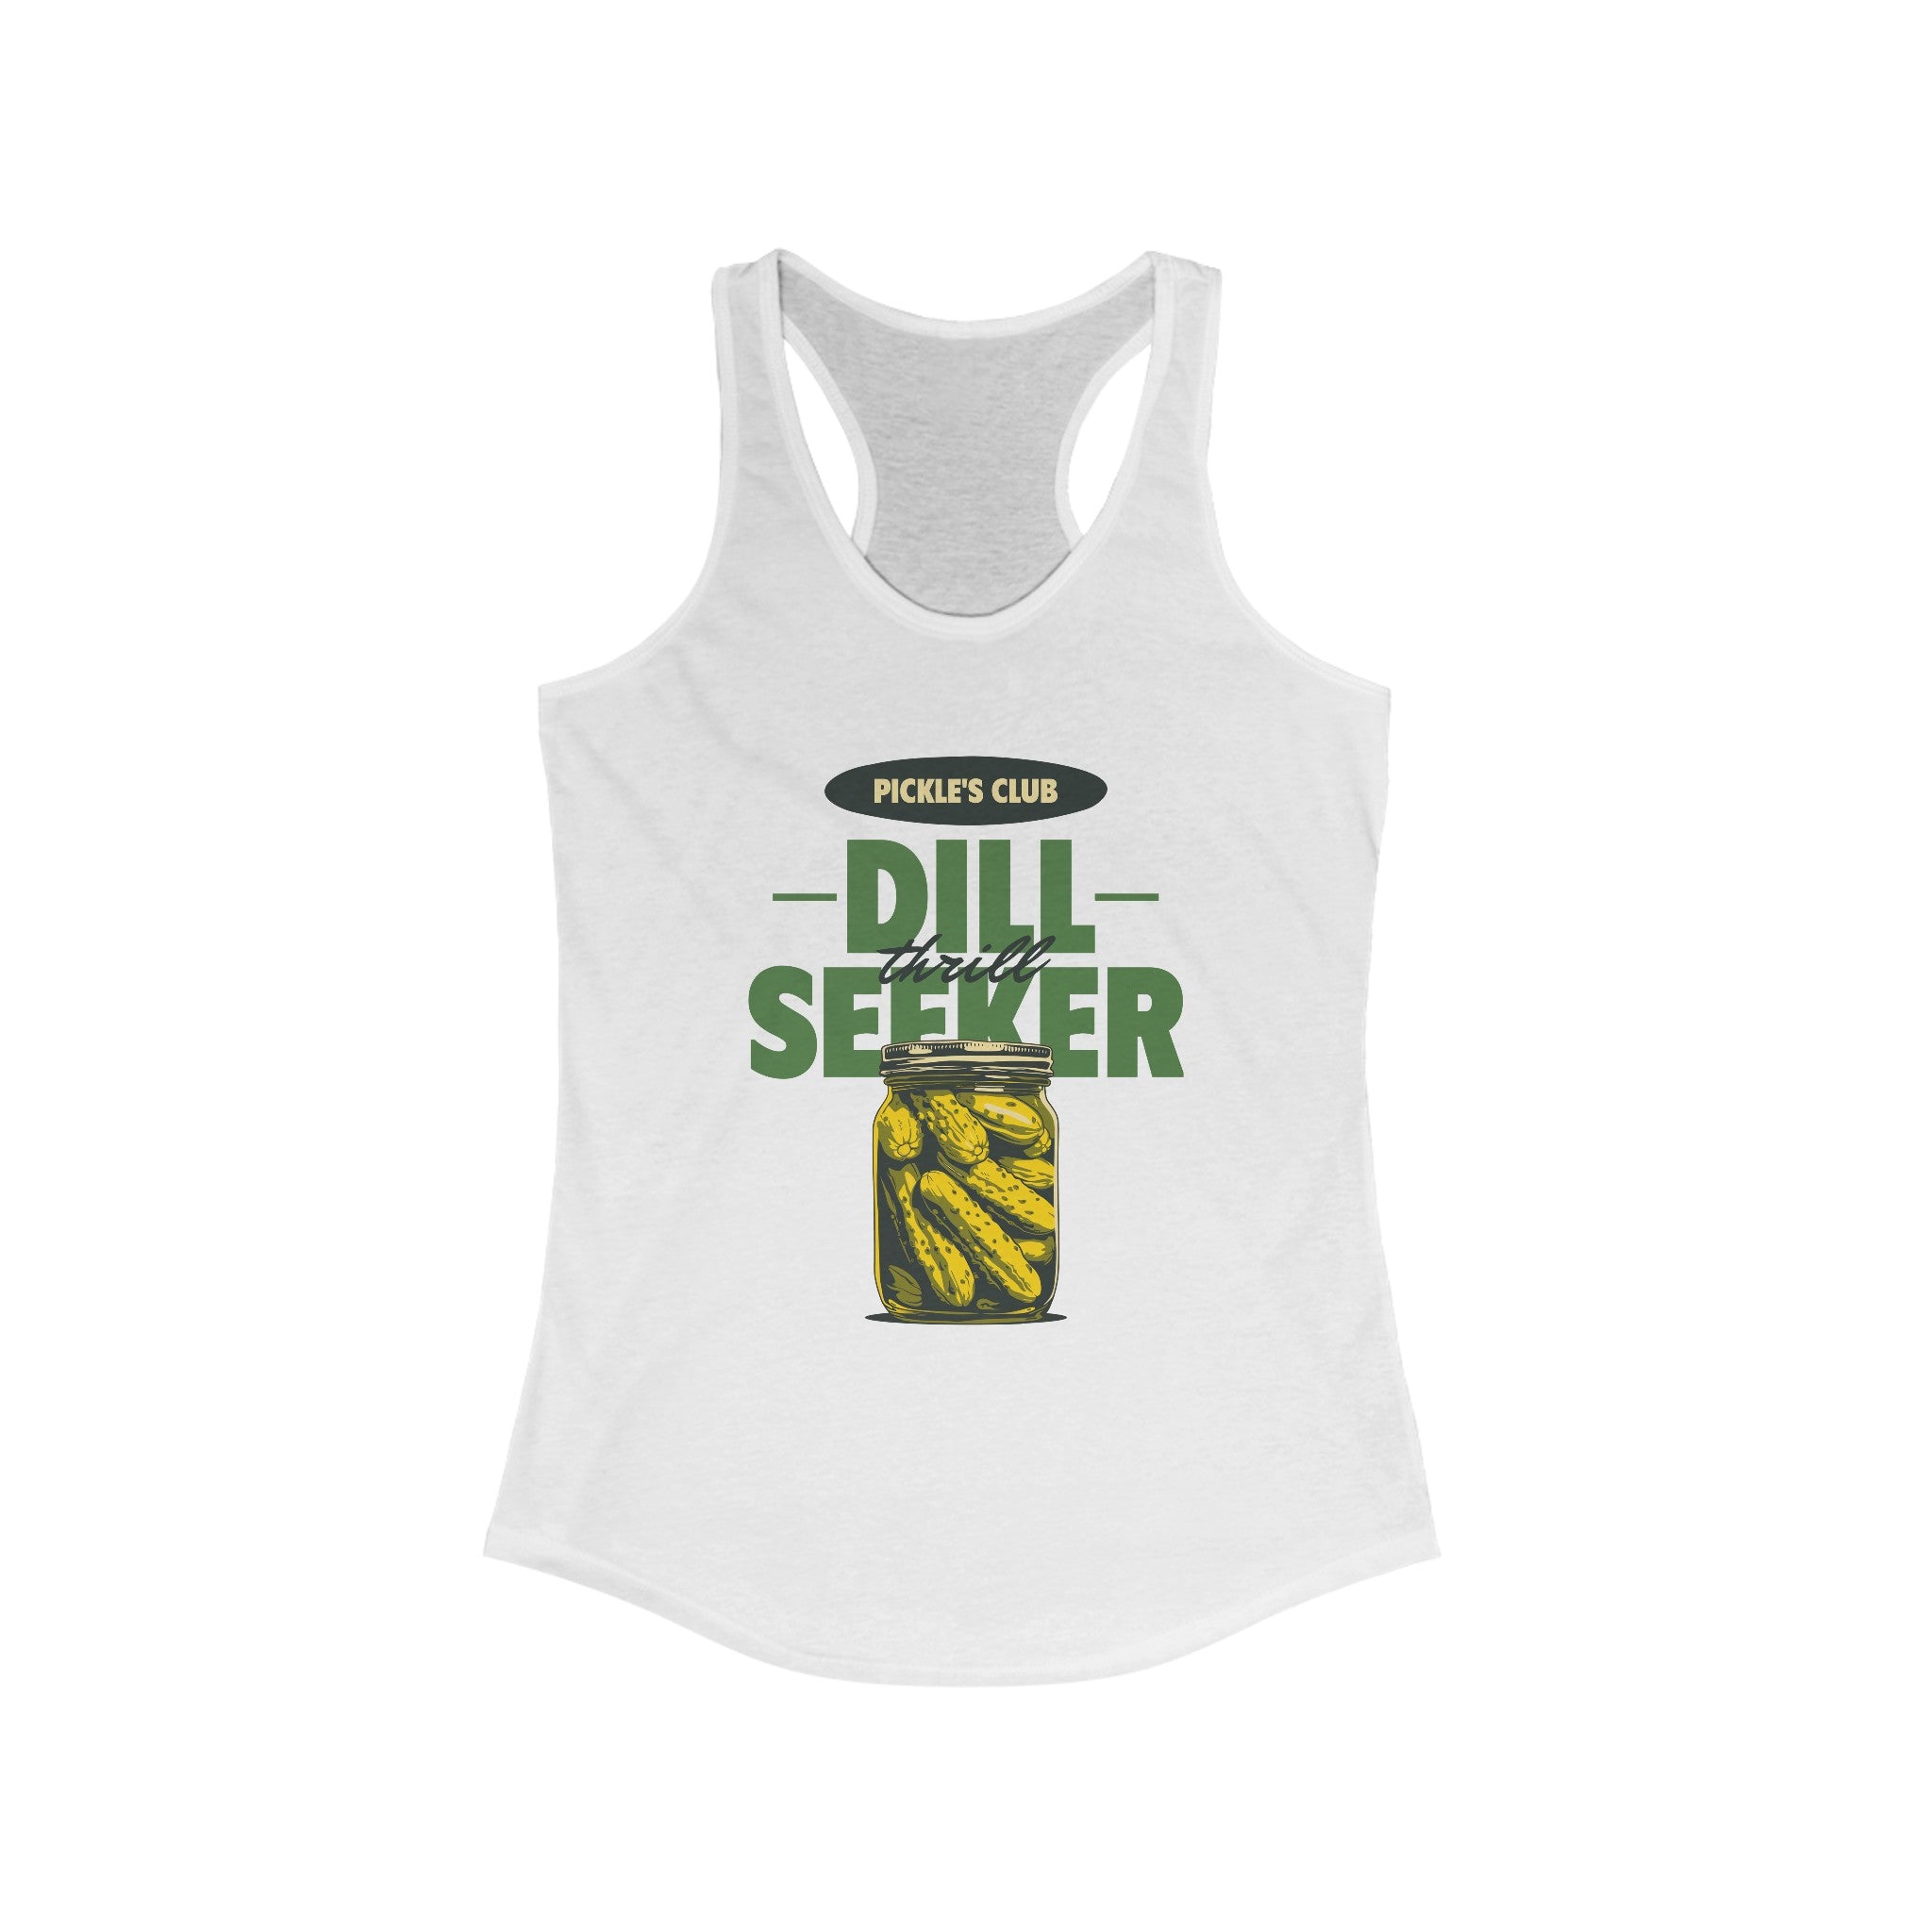 Dill Seeker - Women's Racerback Tank